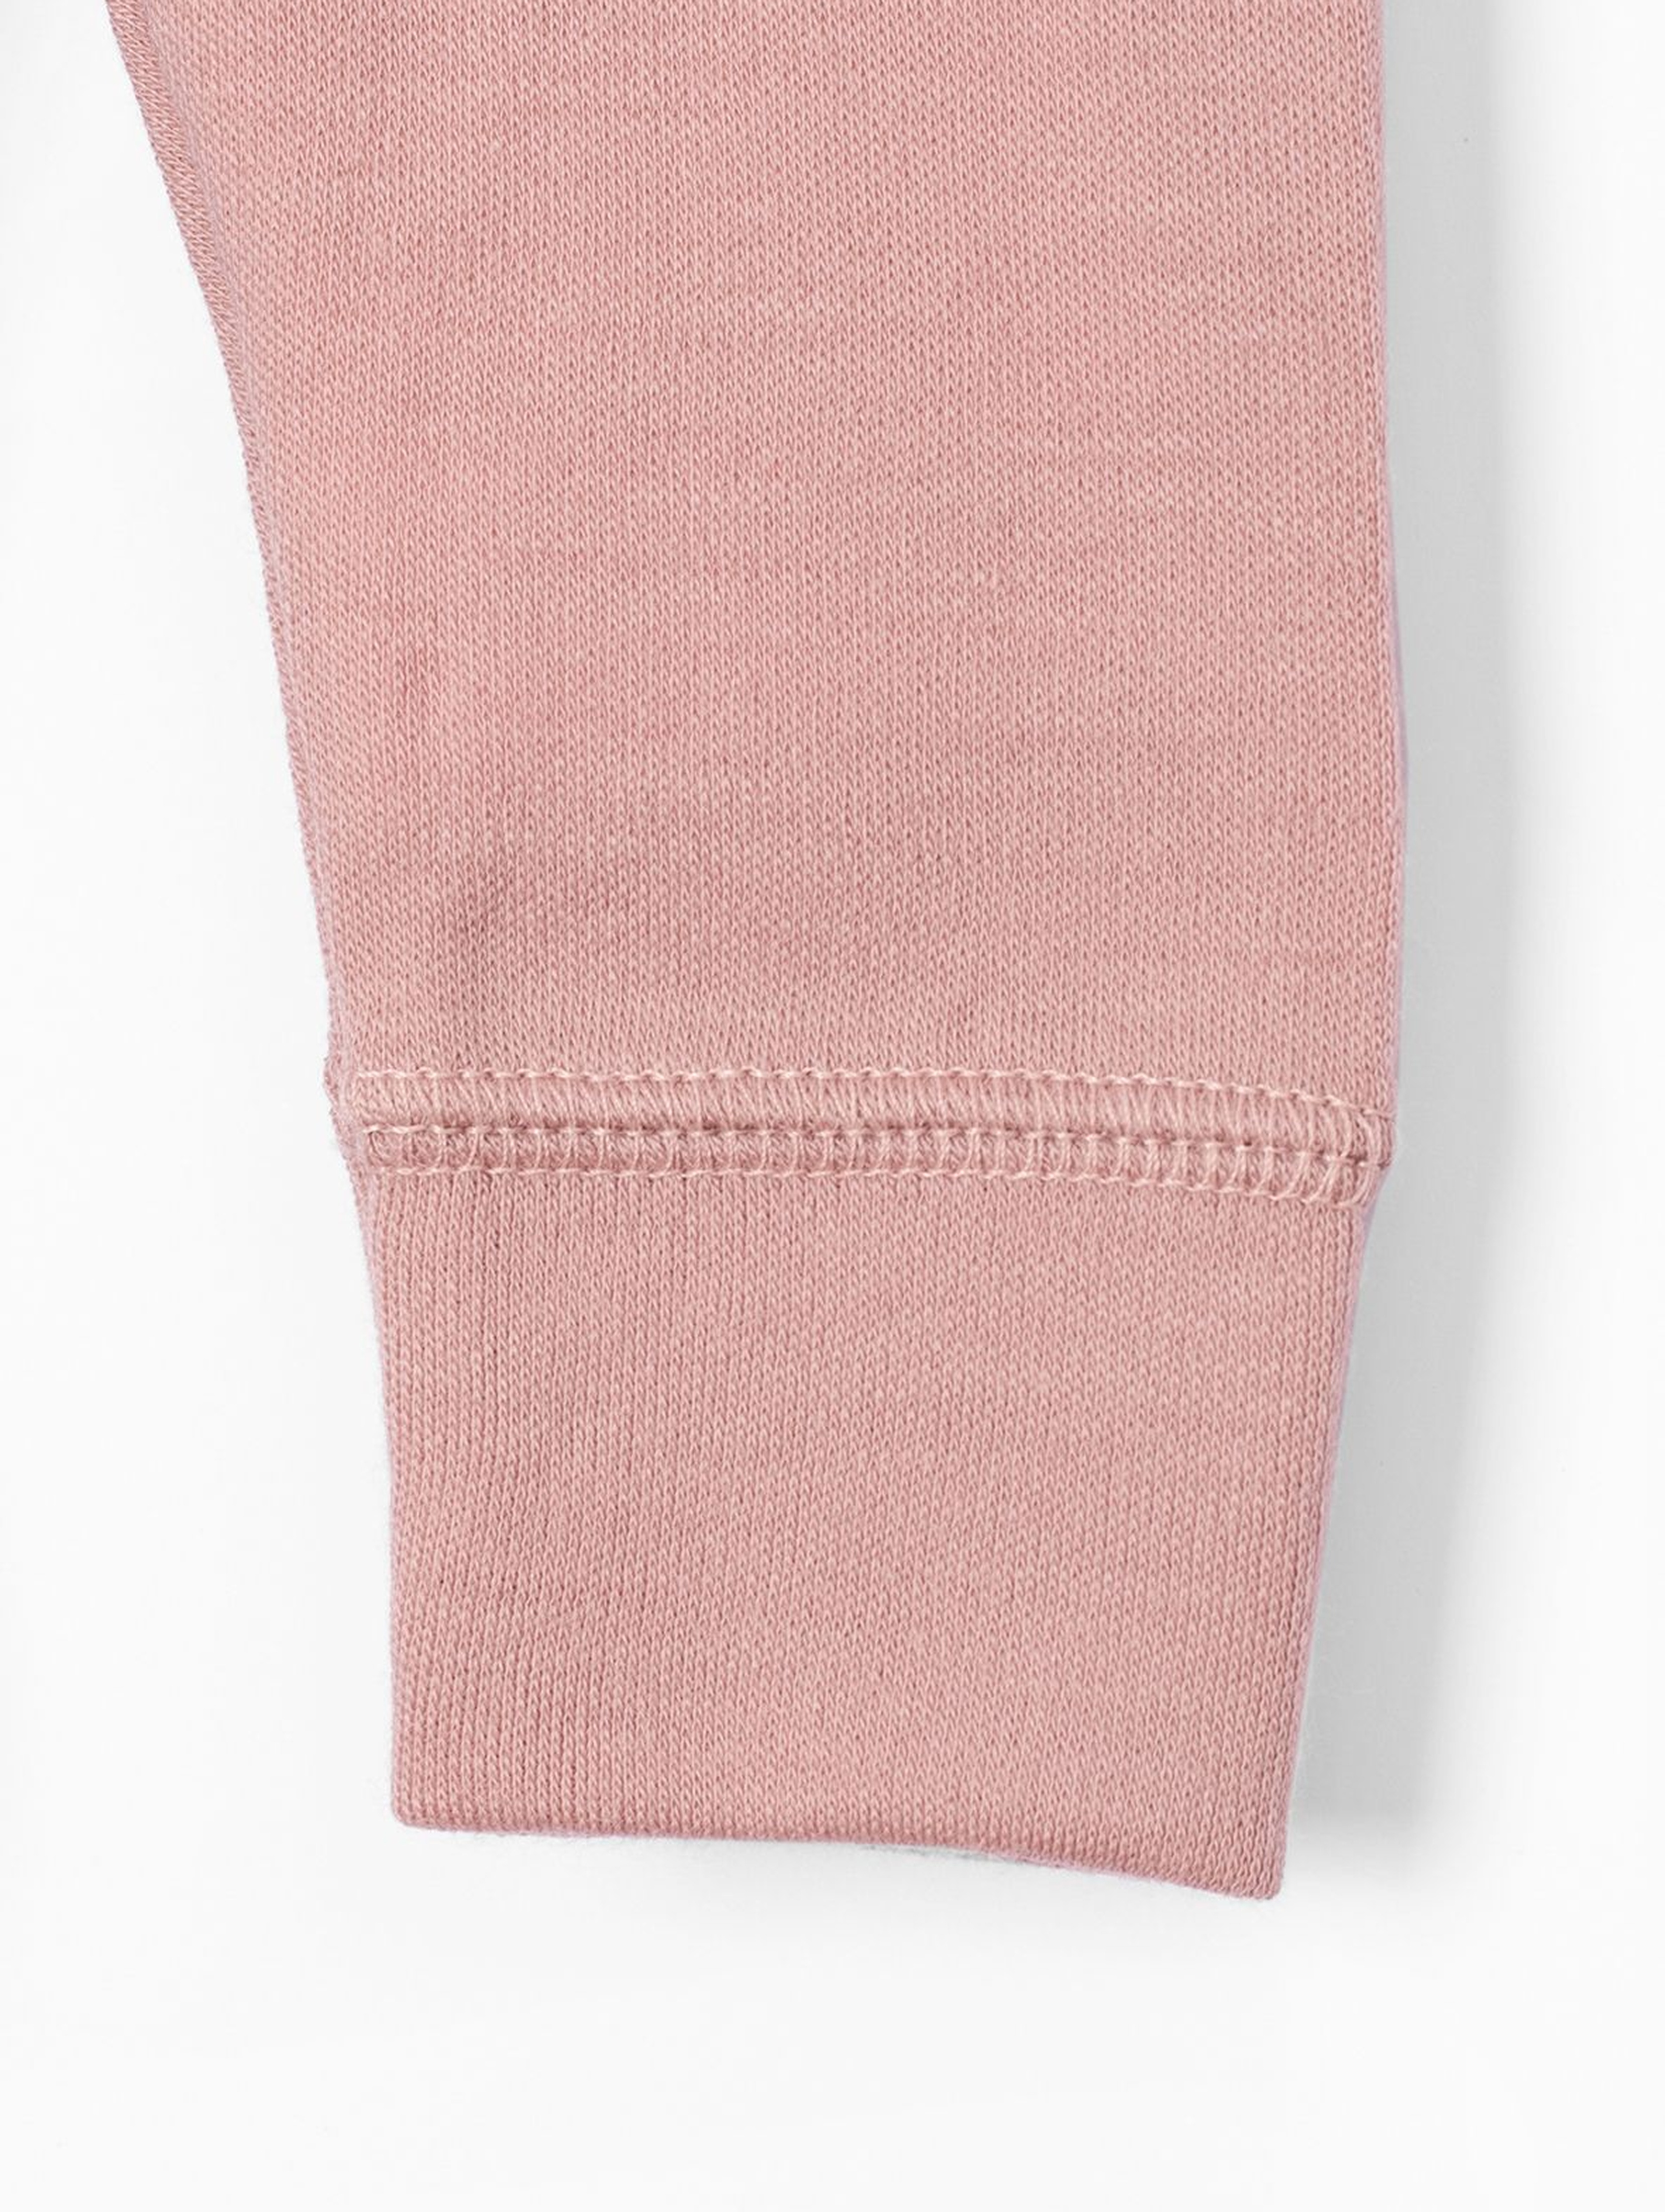 Wełniane różowe spodnie dresowe dla niemowlaka